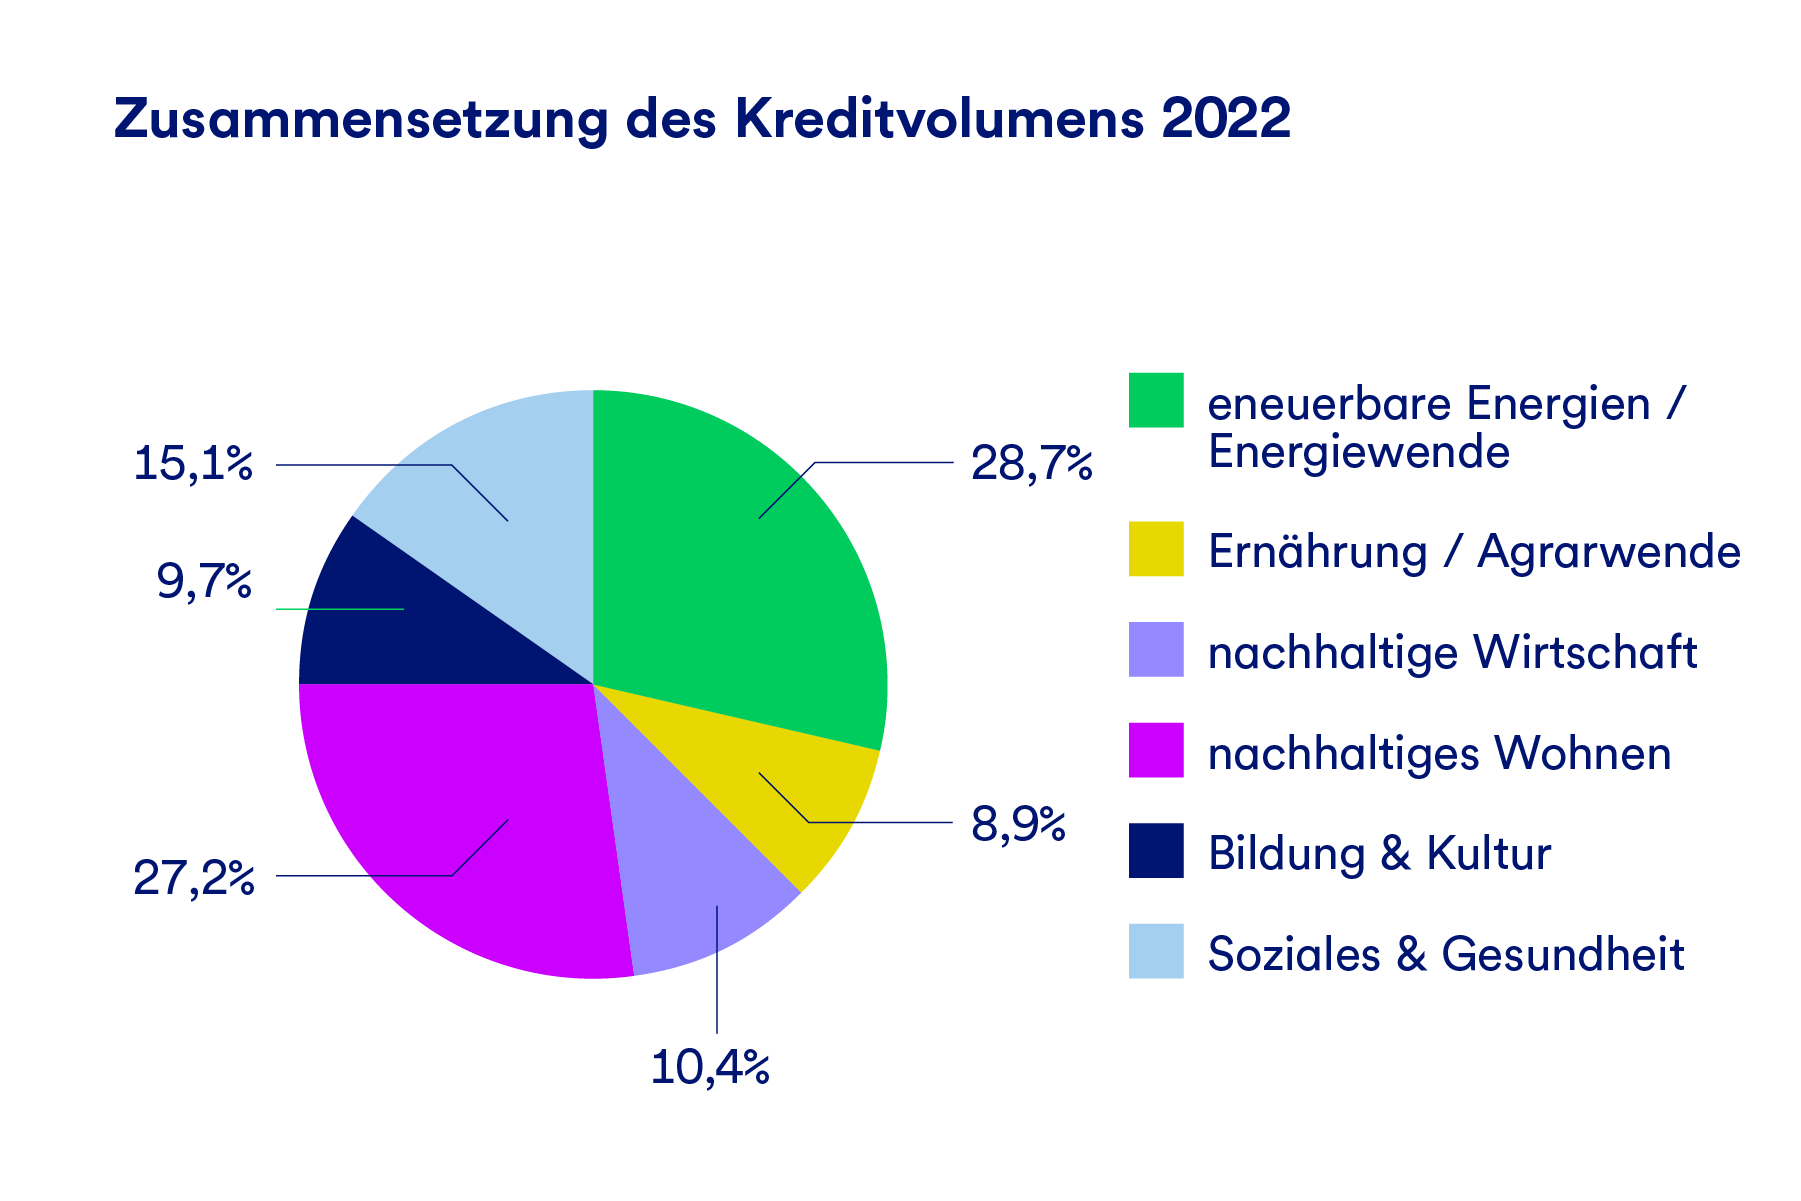 Ein Kreisdiagramm, das die Zusammensetzung des Kreditvolumens nach Branche für 2022 darstellt. 